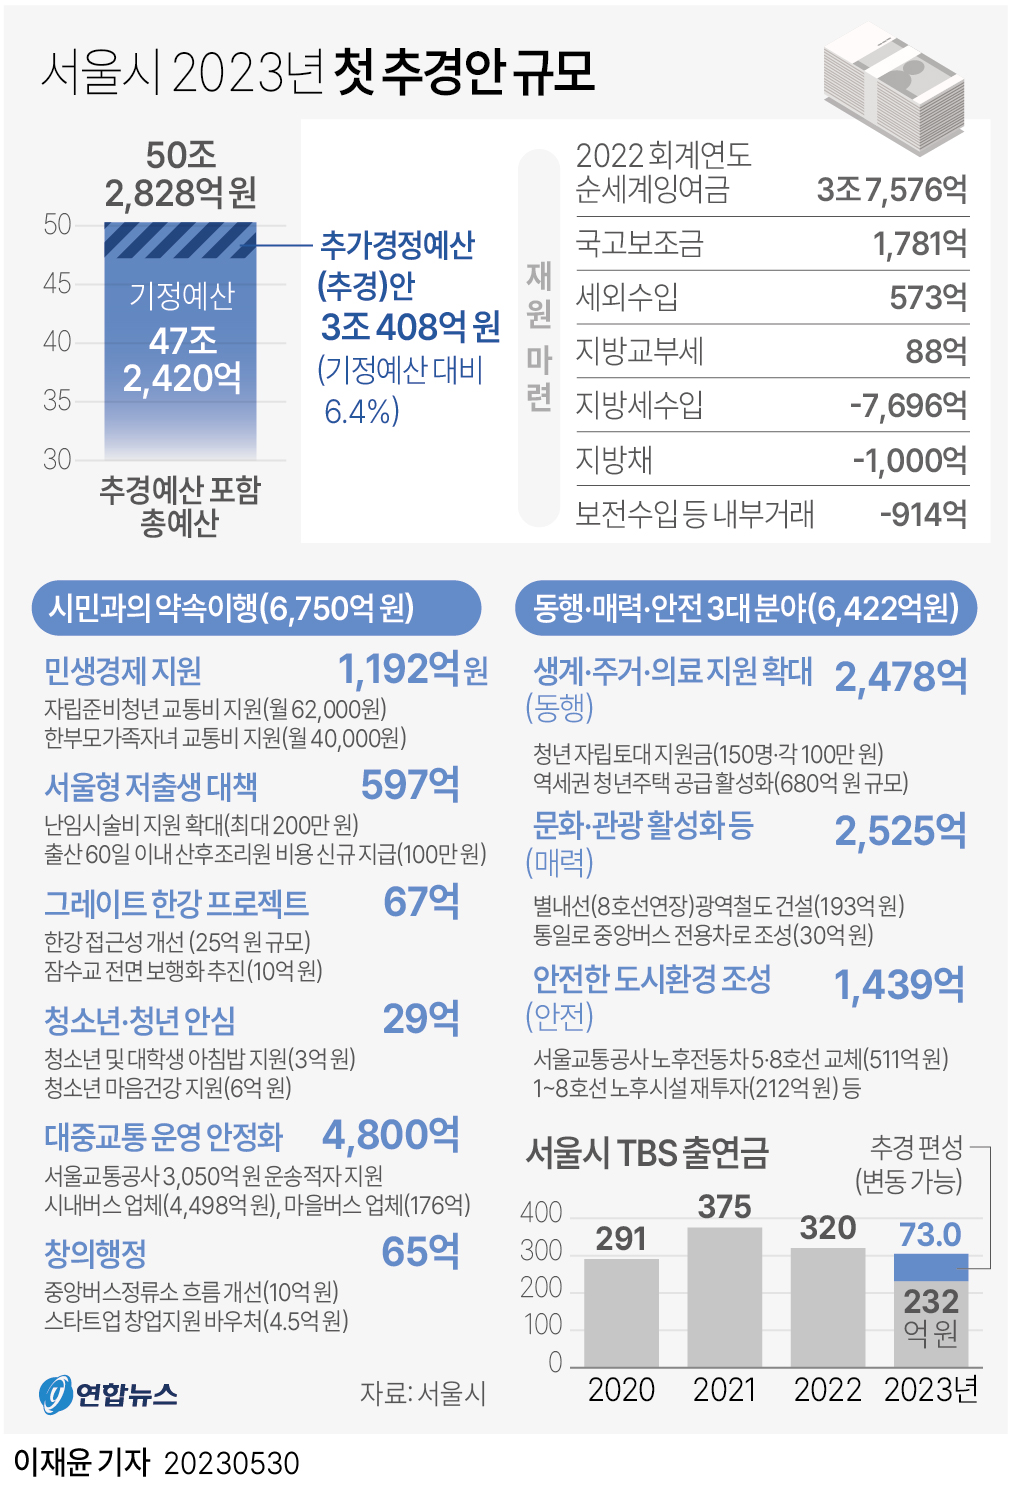  서울시 2023년 첫 추경안 규모